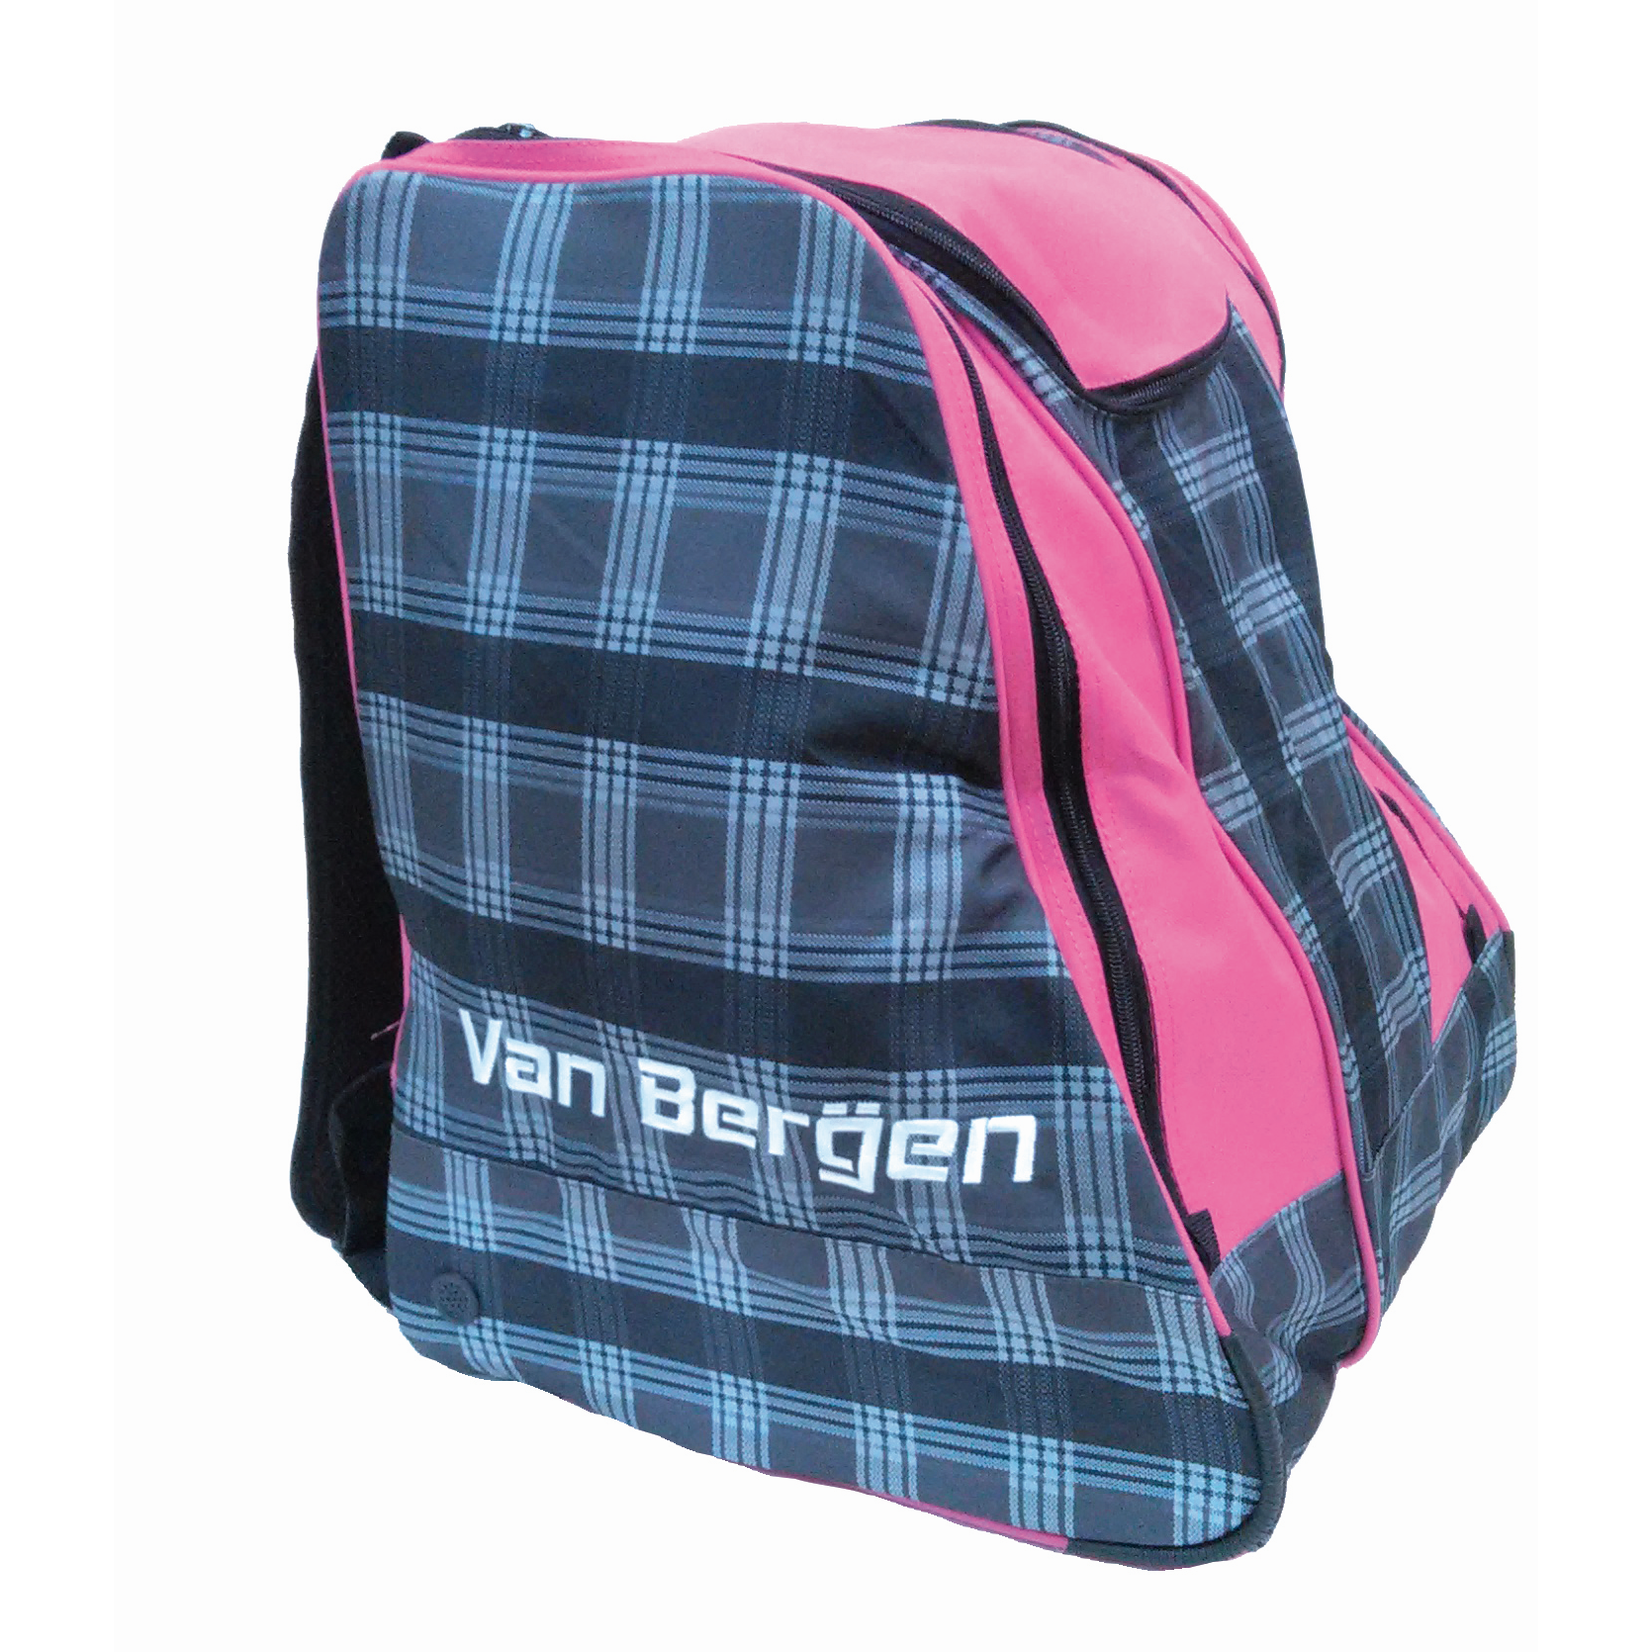 Berio Hiver Ski Boot Bag - Van Bergen PW1200